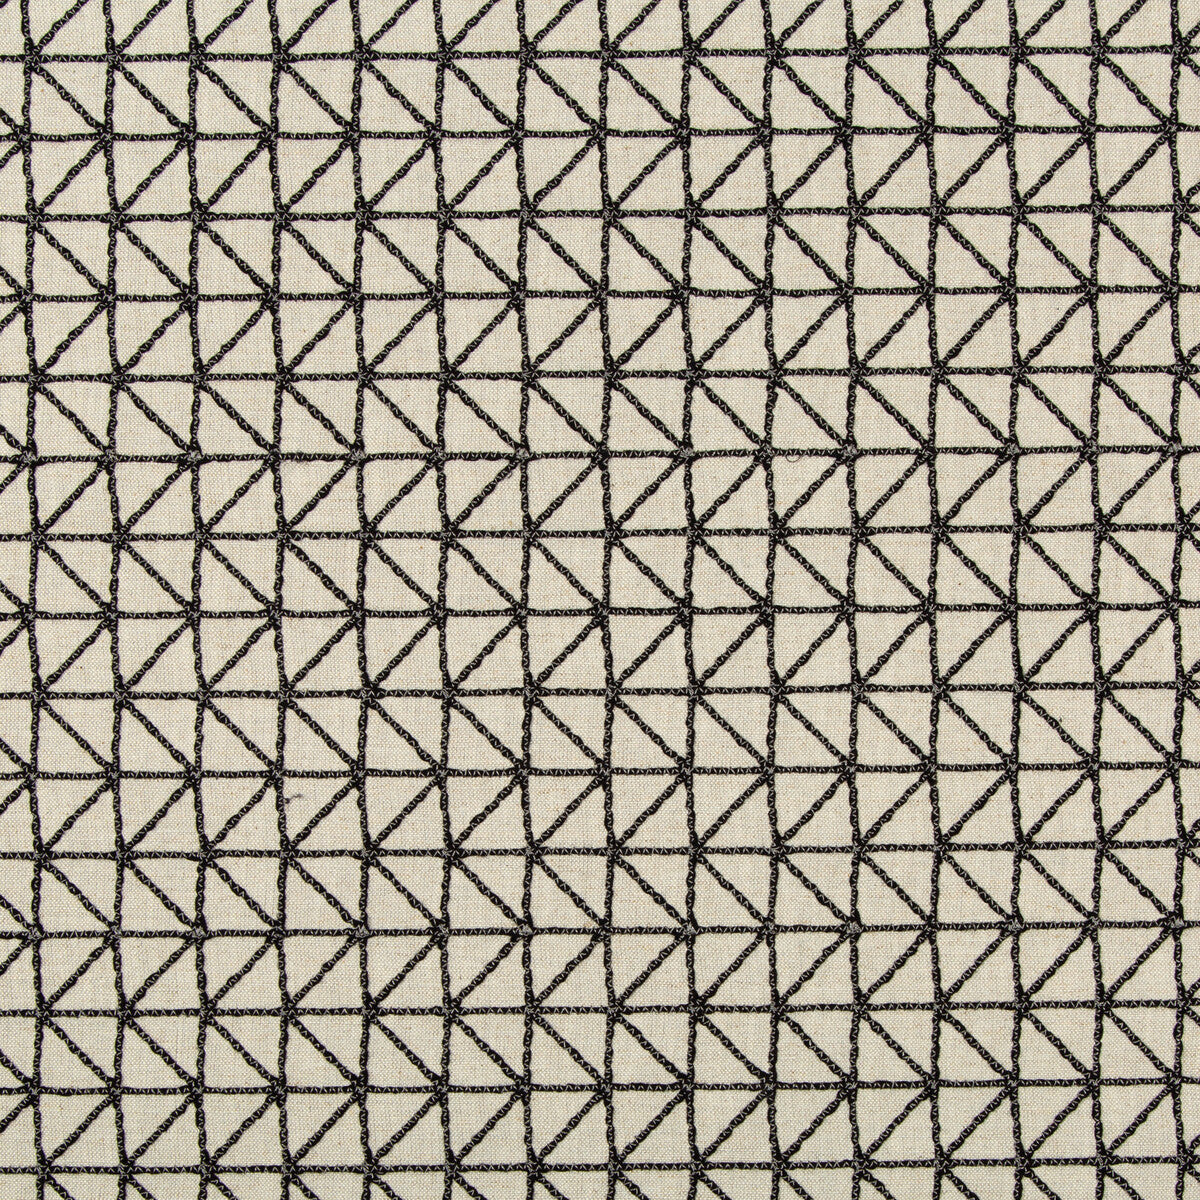 Kravet Basics fabric in 36129-81 color - pattern 36129.81.0 - by Kravet Basics